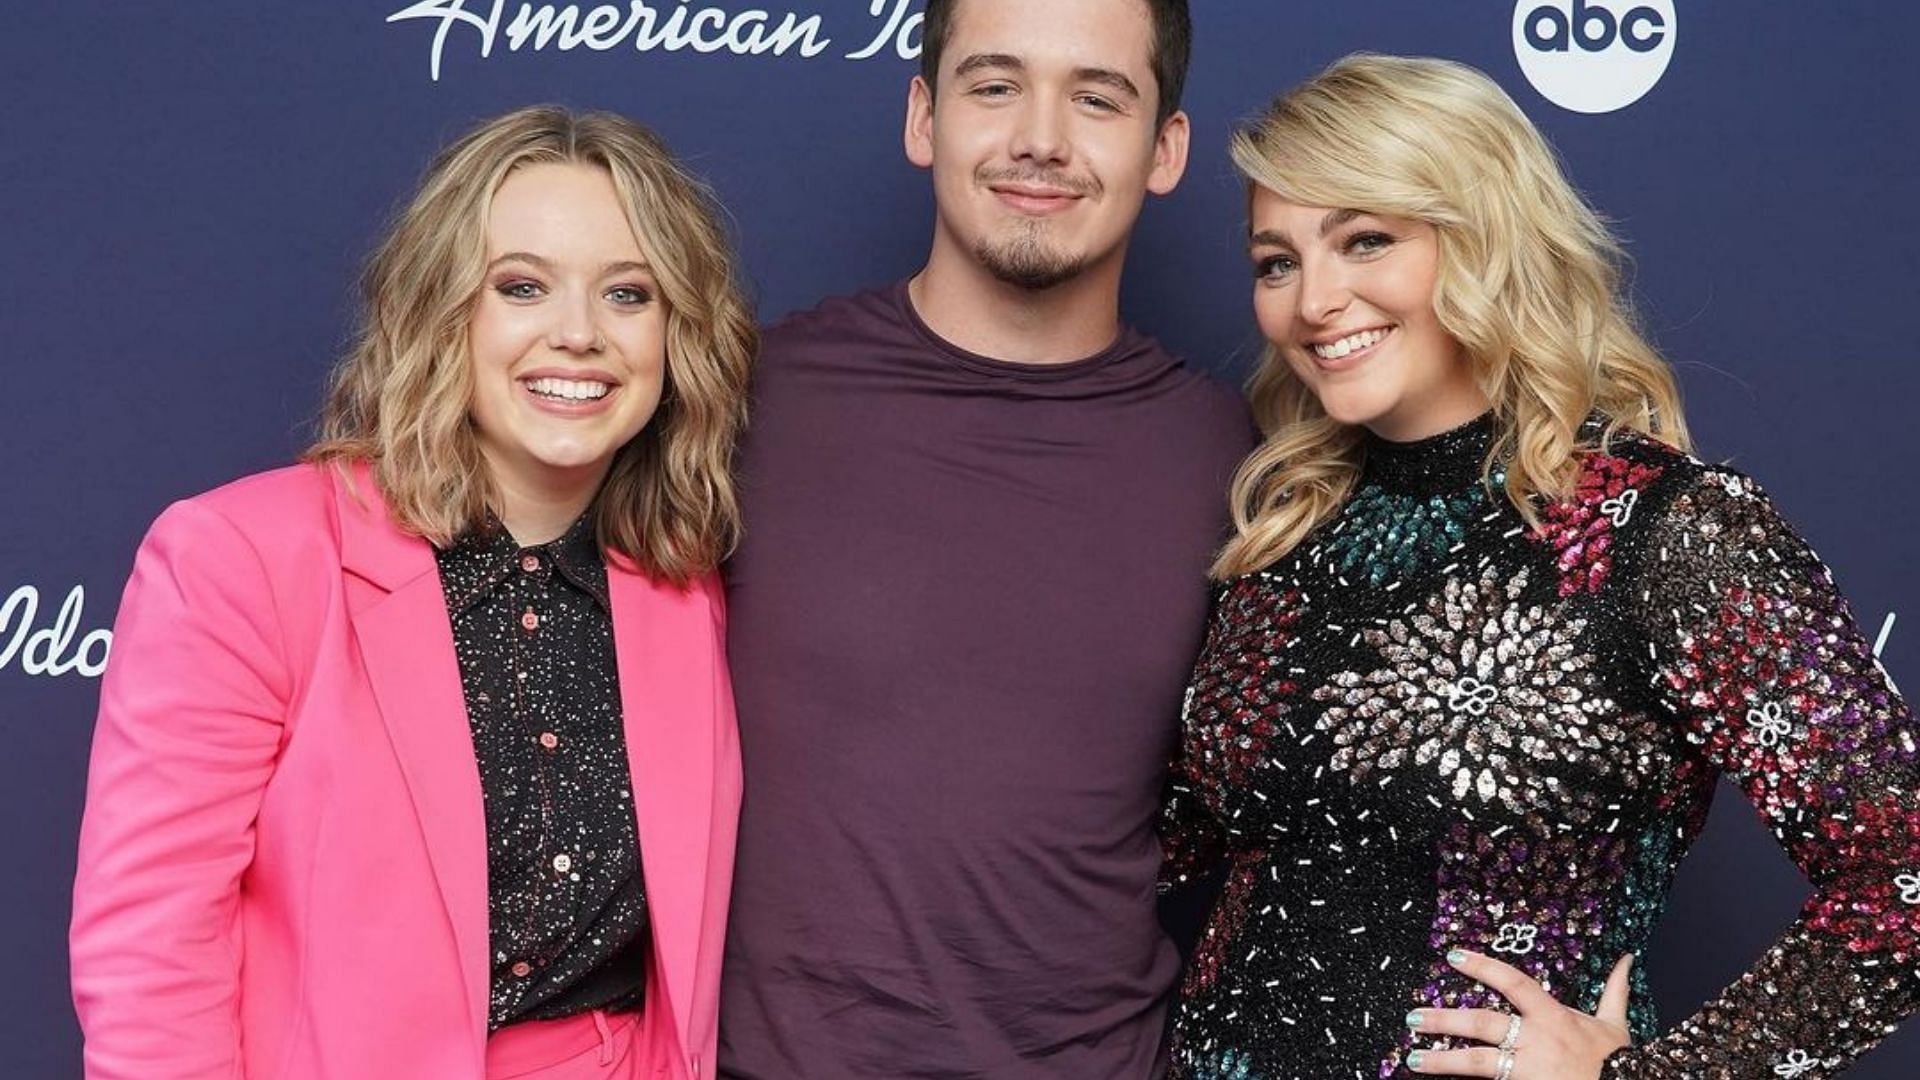 American Idol Season 20 grand finale airs on May 22 (Image via americanidol/Instagram)